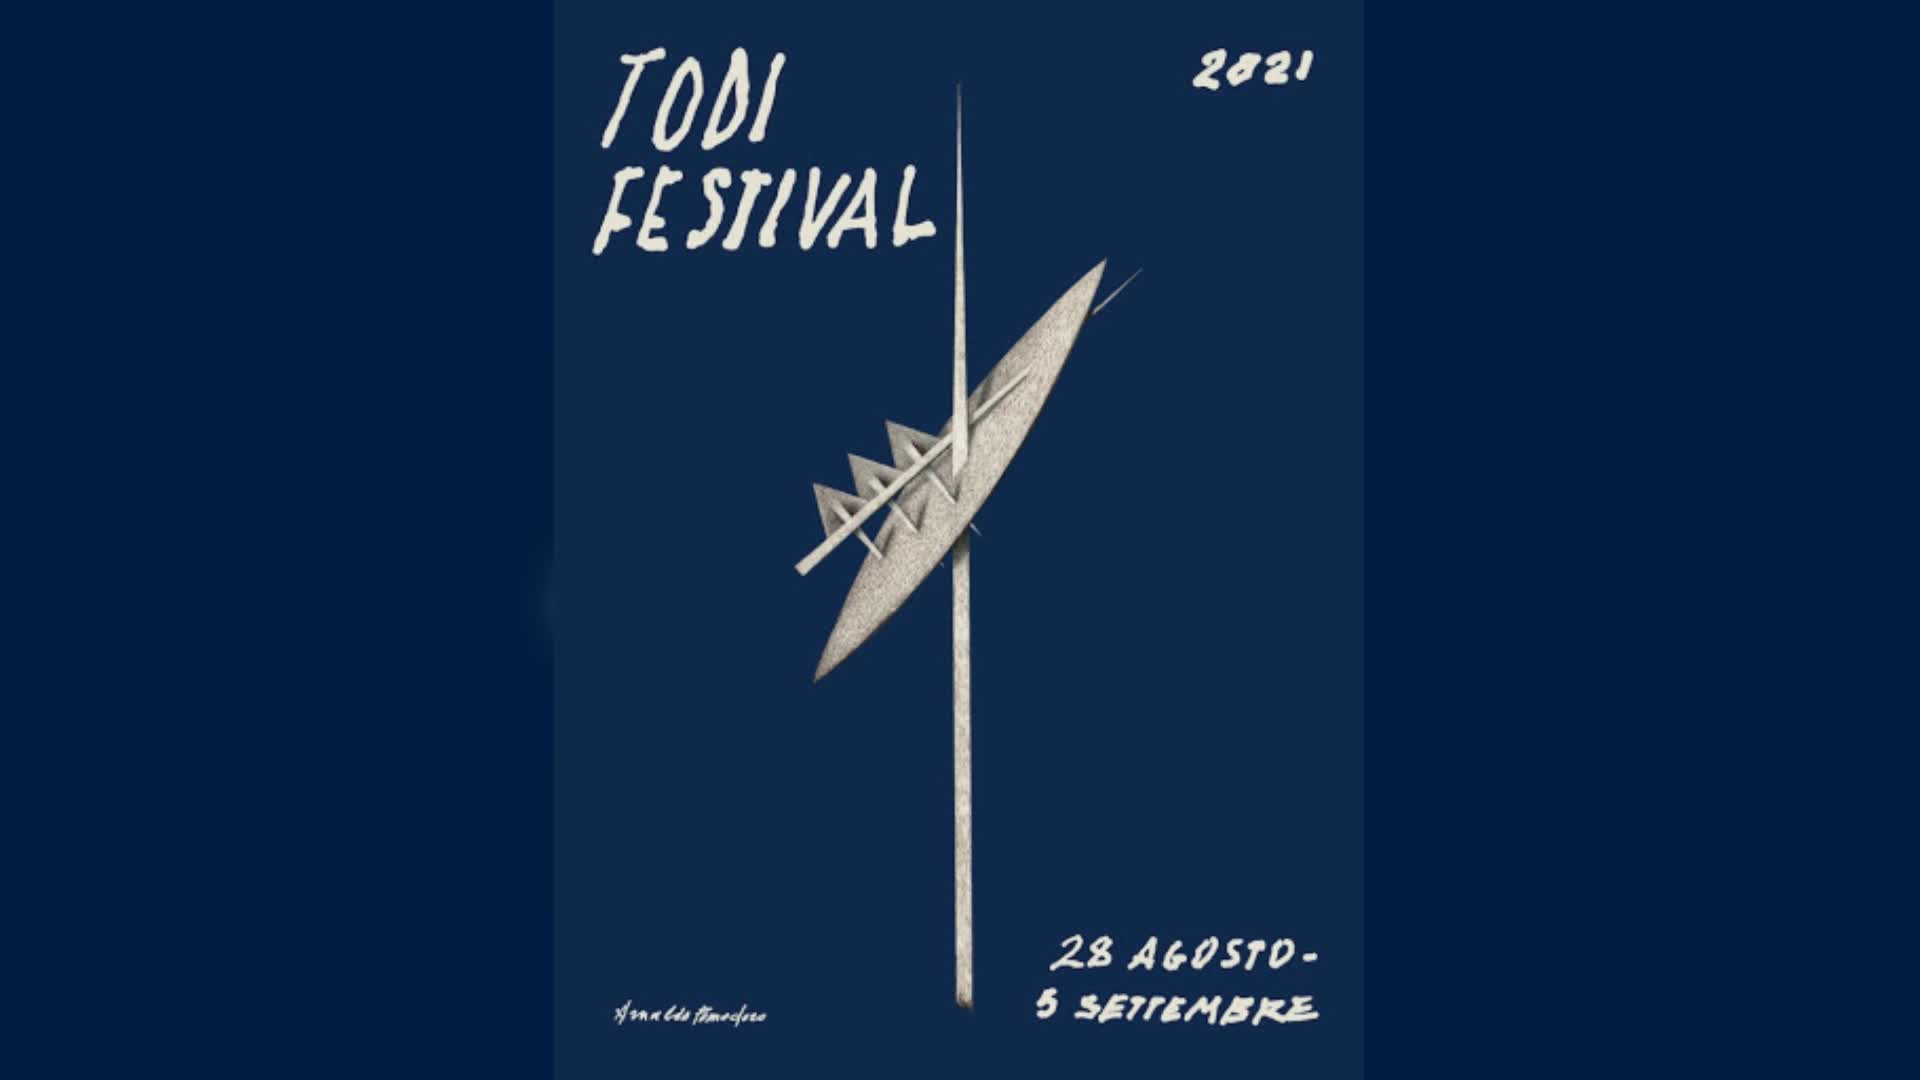 Il logo del Todi Festival 2021 firmato da Arnaldo Pomodoro